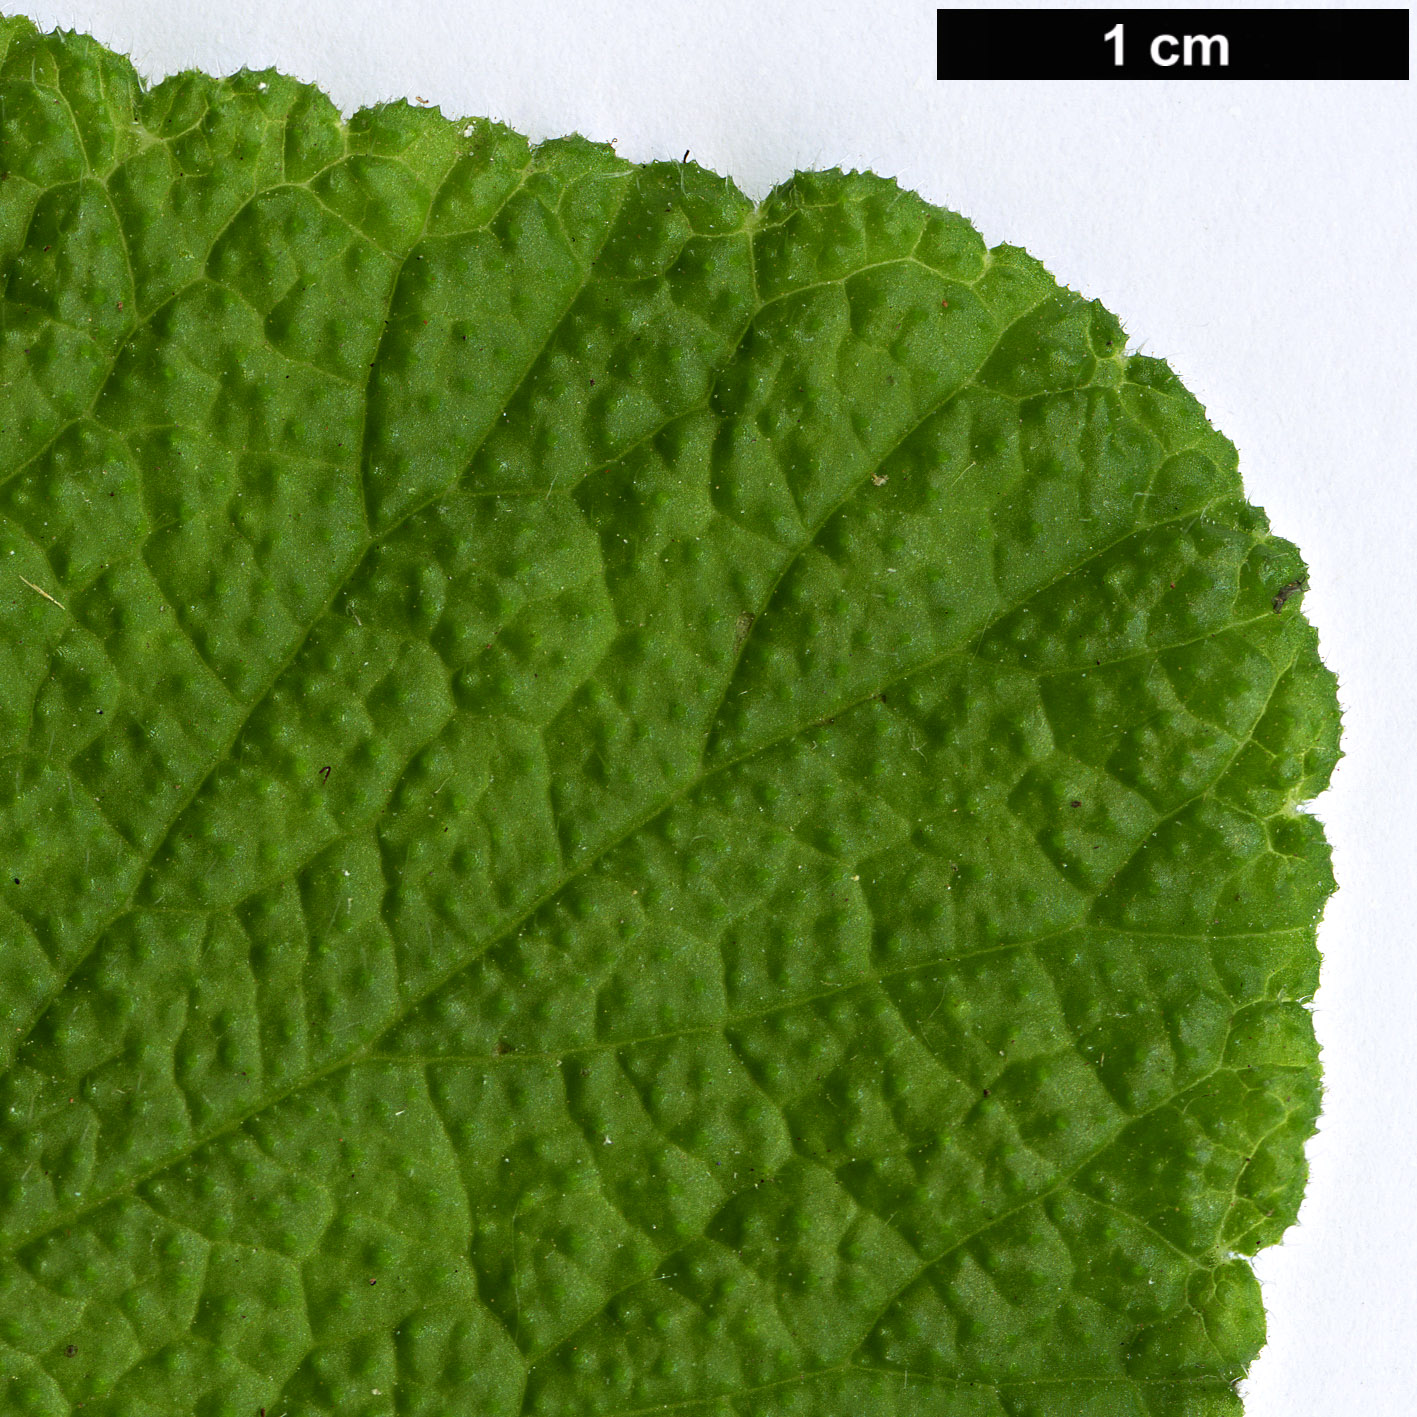 High resolution image: Family: Geraniaceae - Genus: Pelargonium - Taxon: papilionaceum